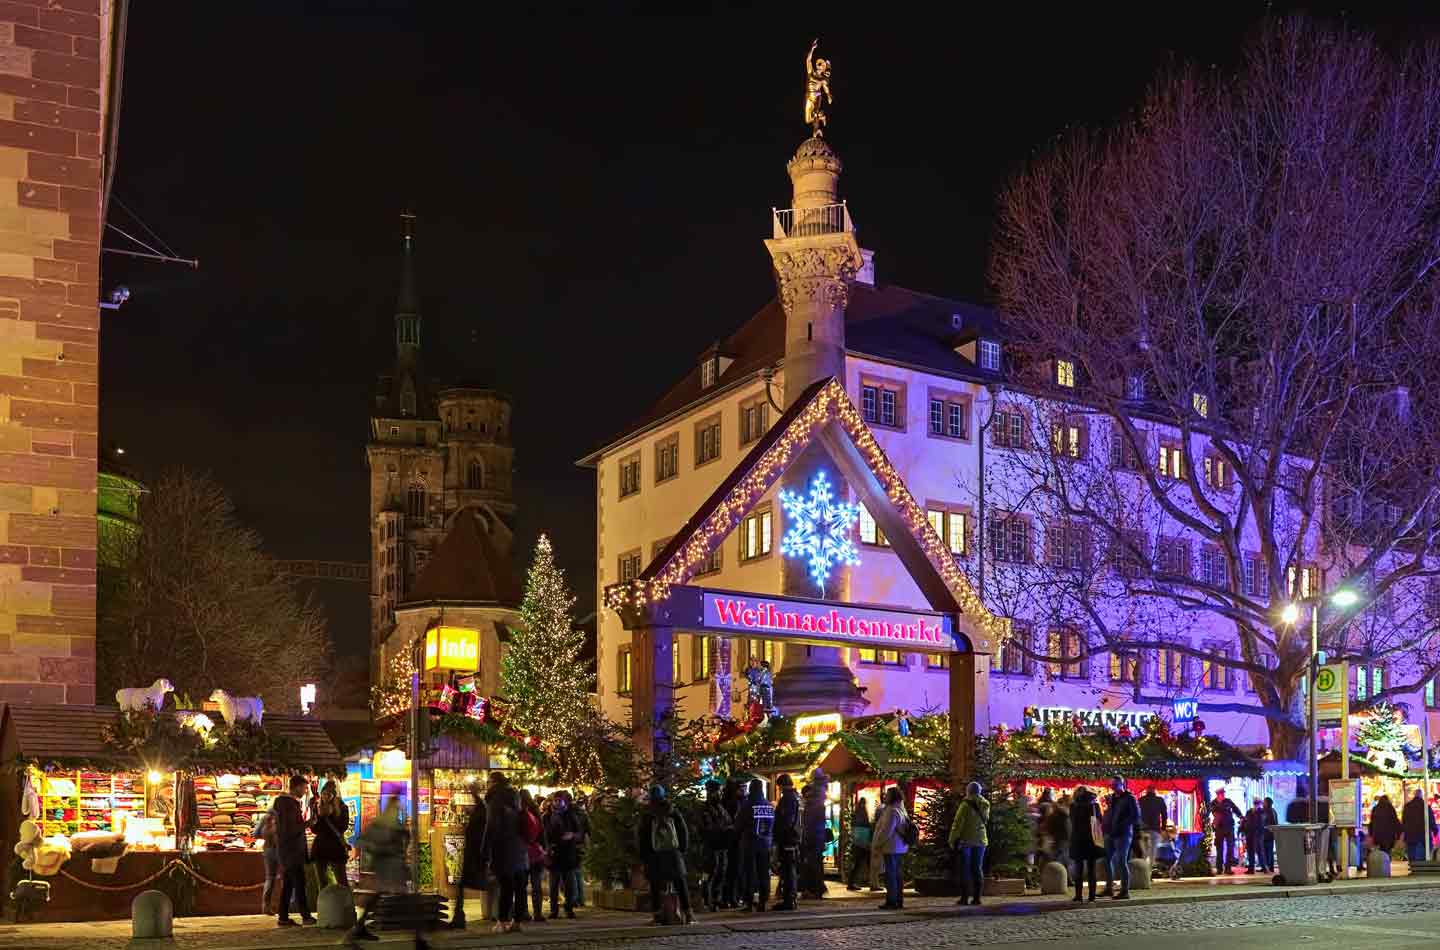 Weihnachtsmarkt Stuttgart nachts Eingang beleuchtet